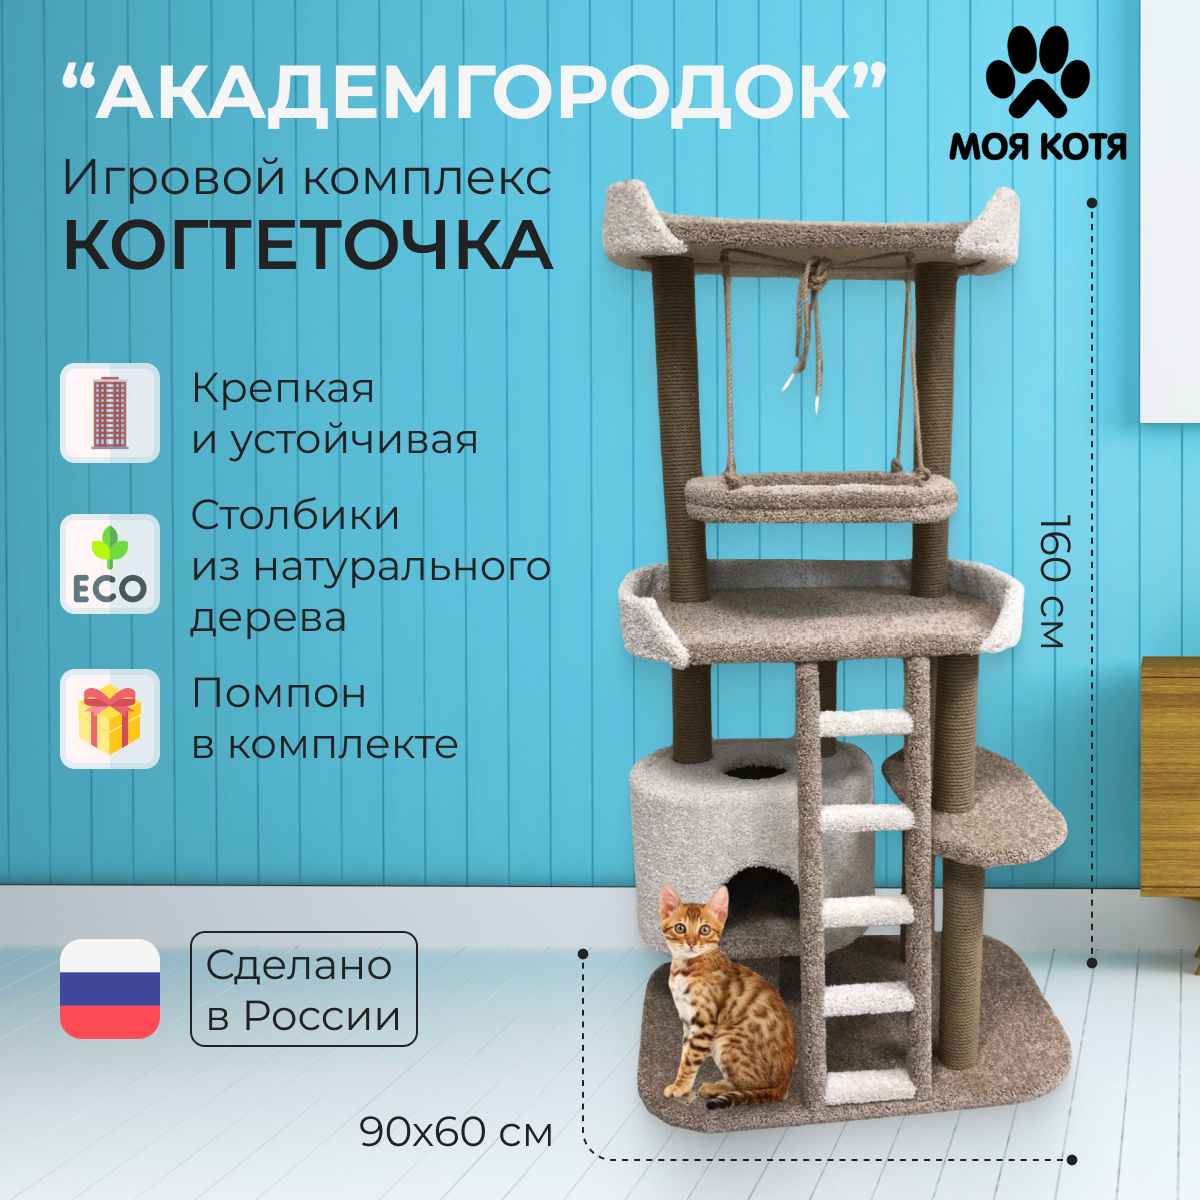 Игровой комплекс для кошек с когтеточкой Моя Котя "Академгородок" подвесной гамак бежевый с белым